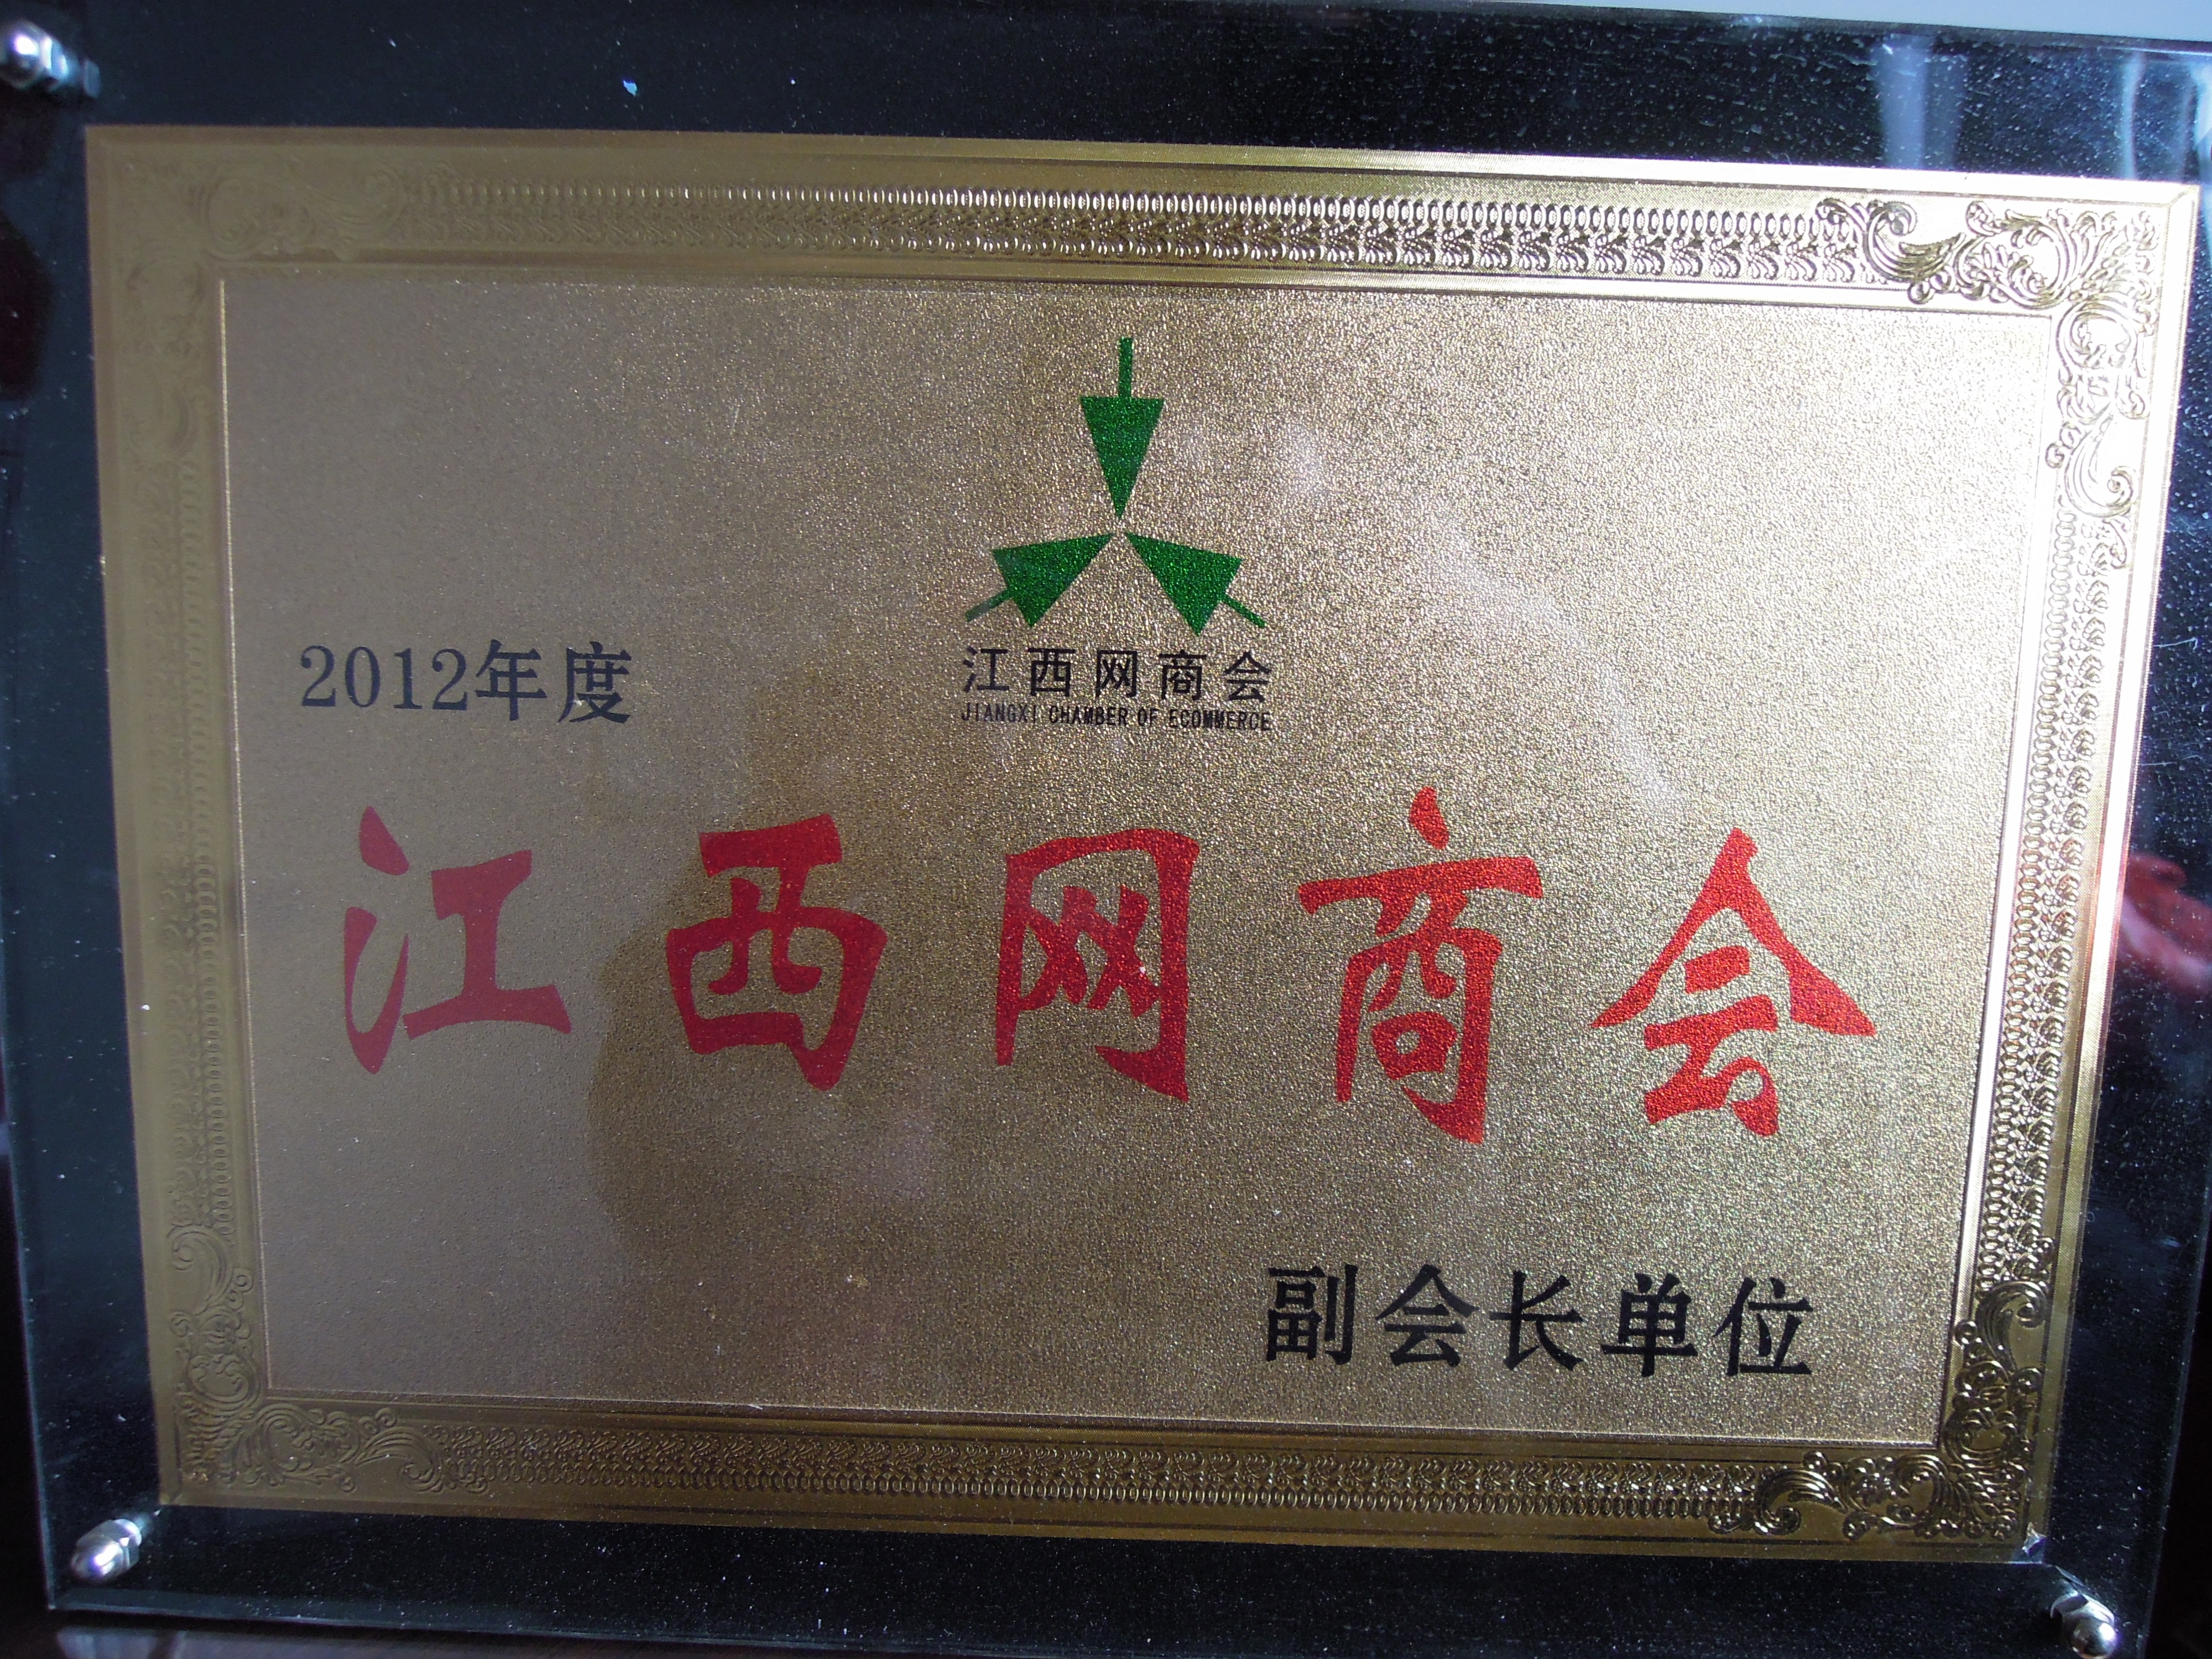 2012 Yılı Yeni Yılı